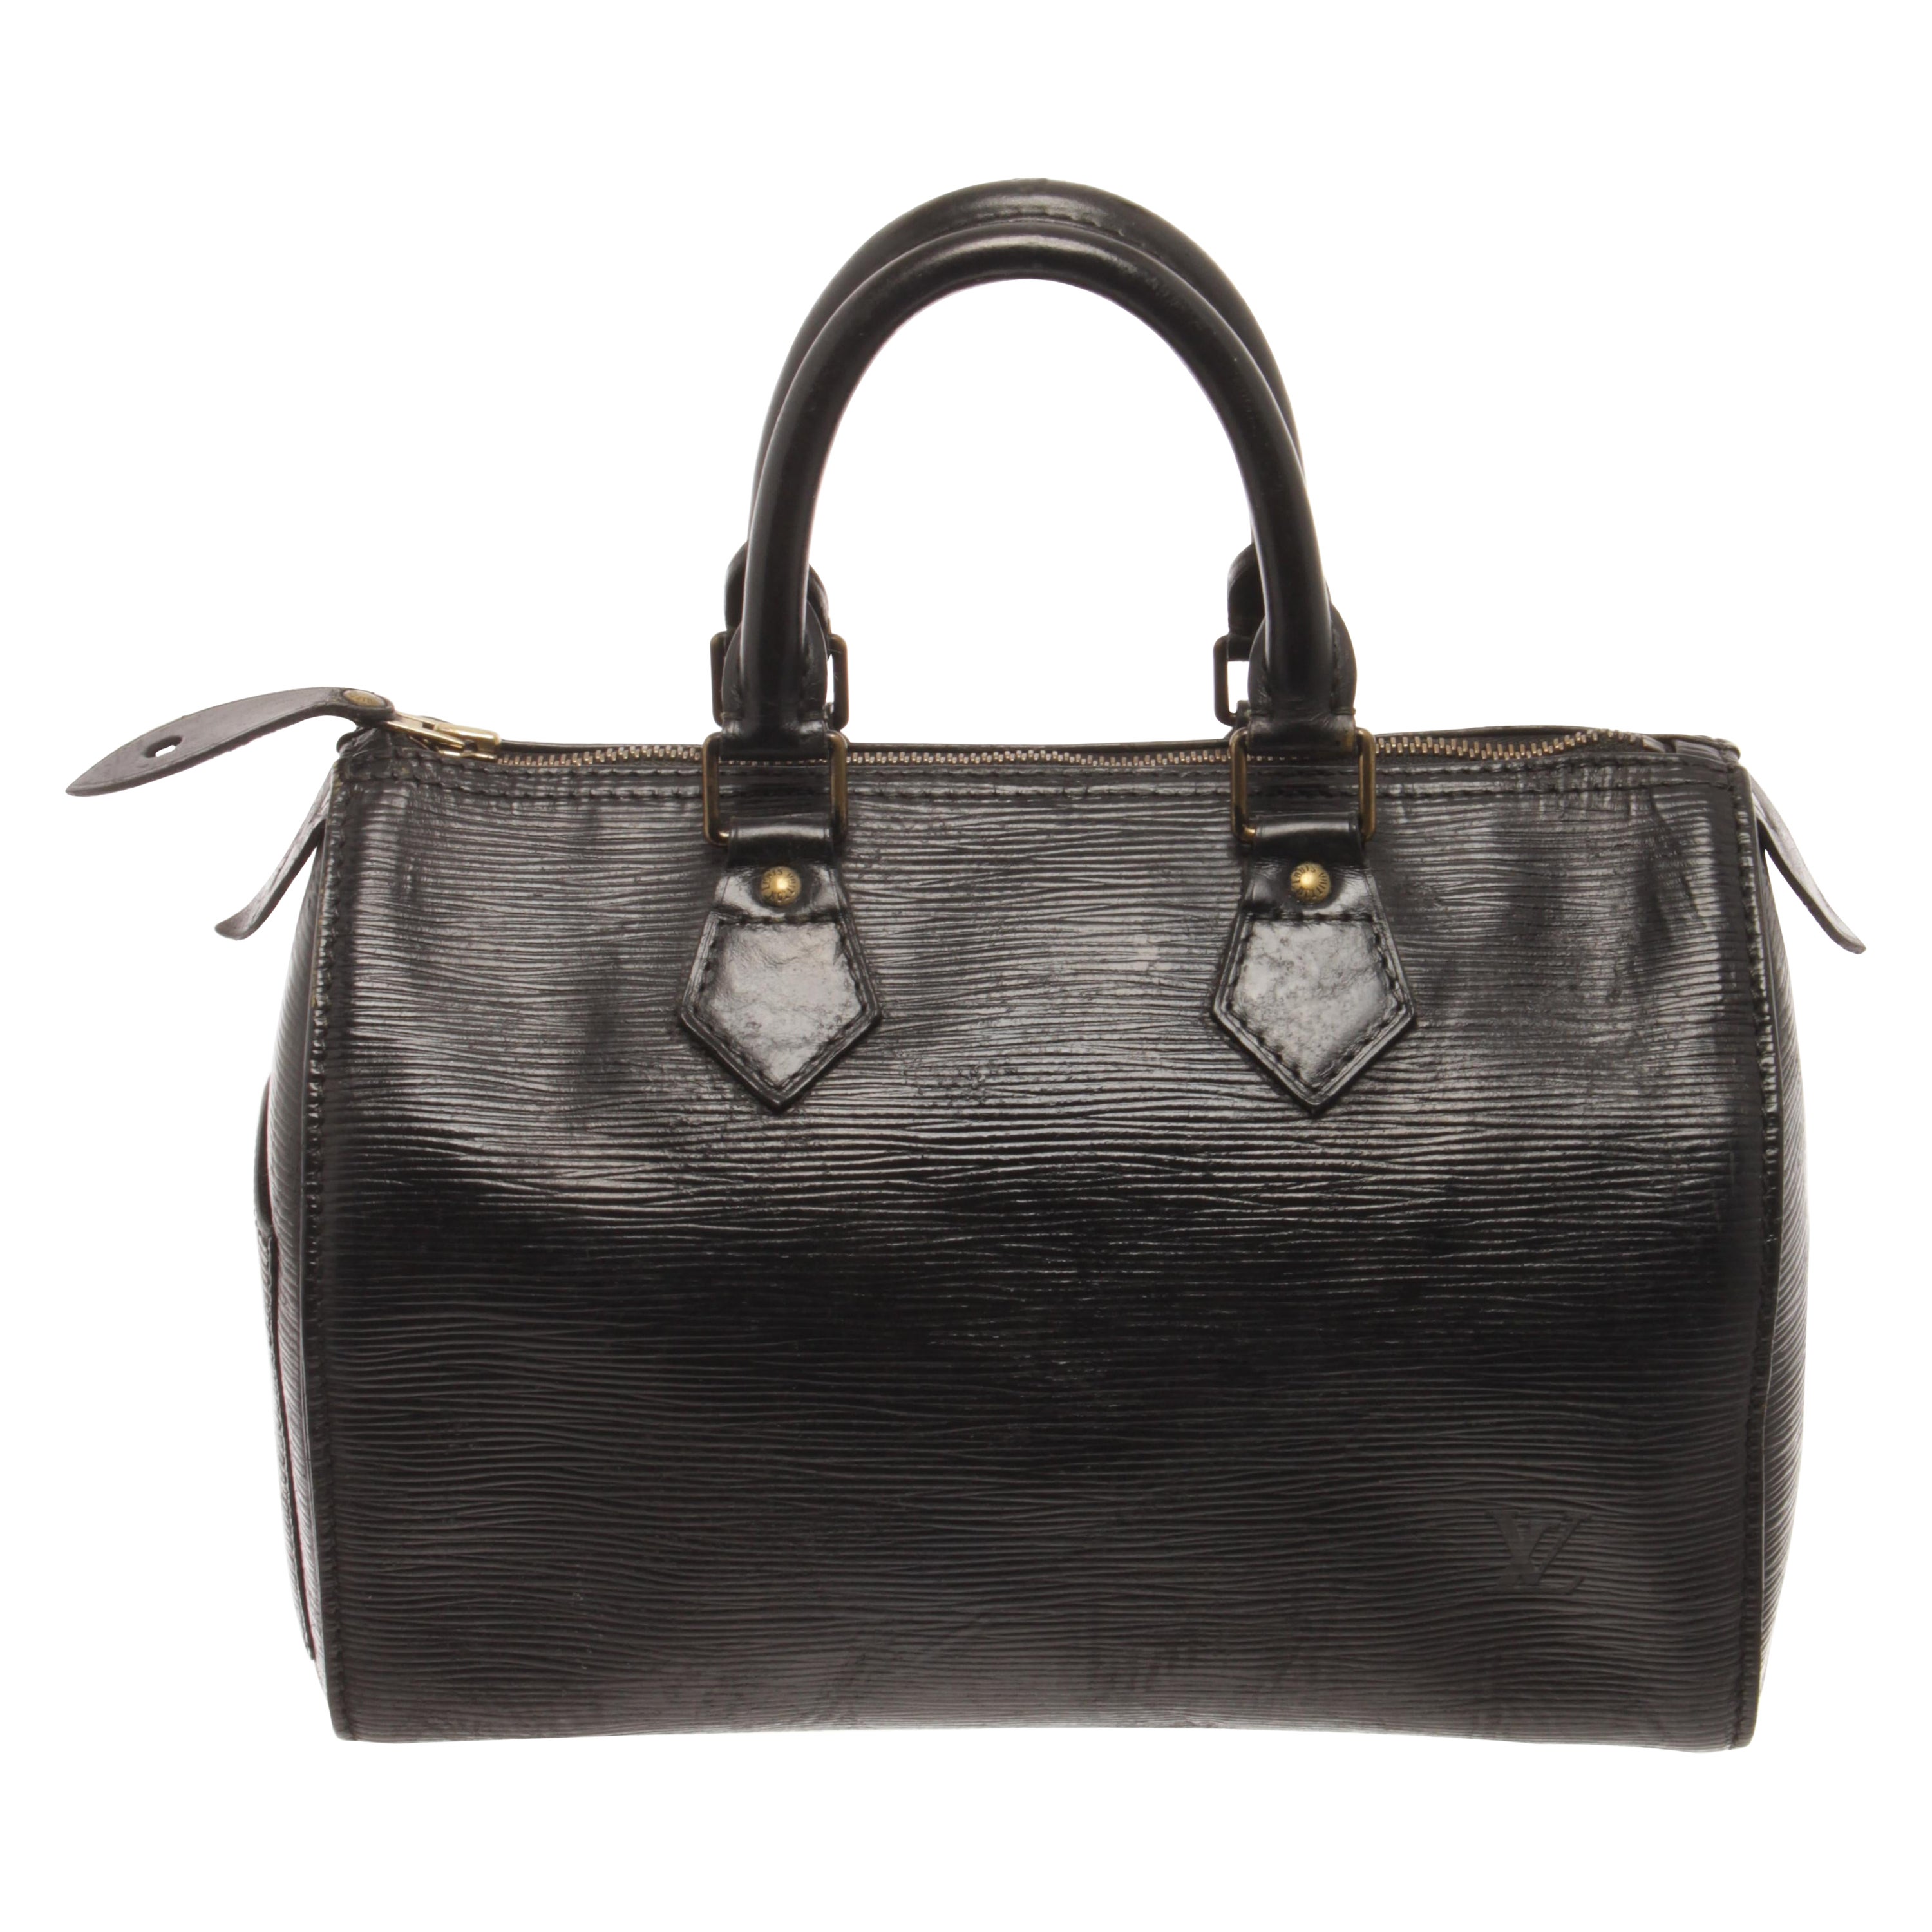 Louis Vuitton Black Epi Leather Speedy 35 Satchel Bag For Sale